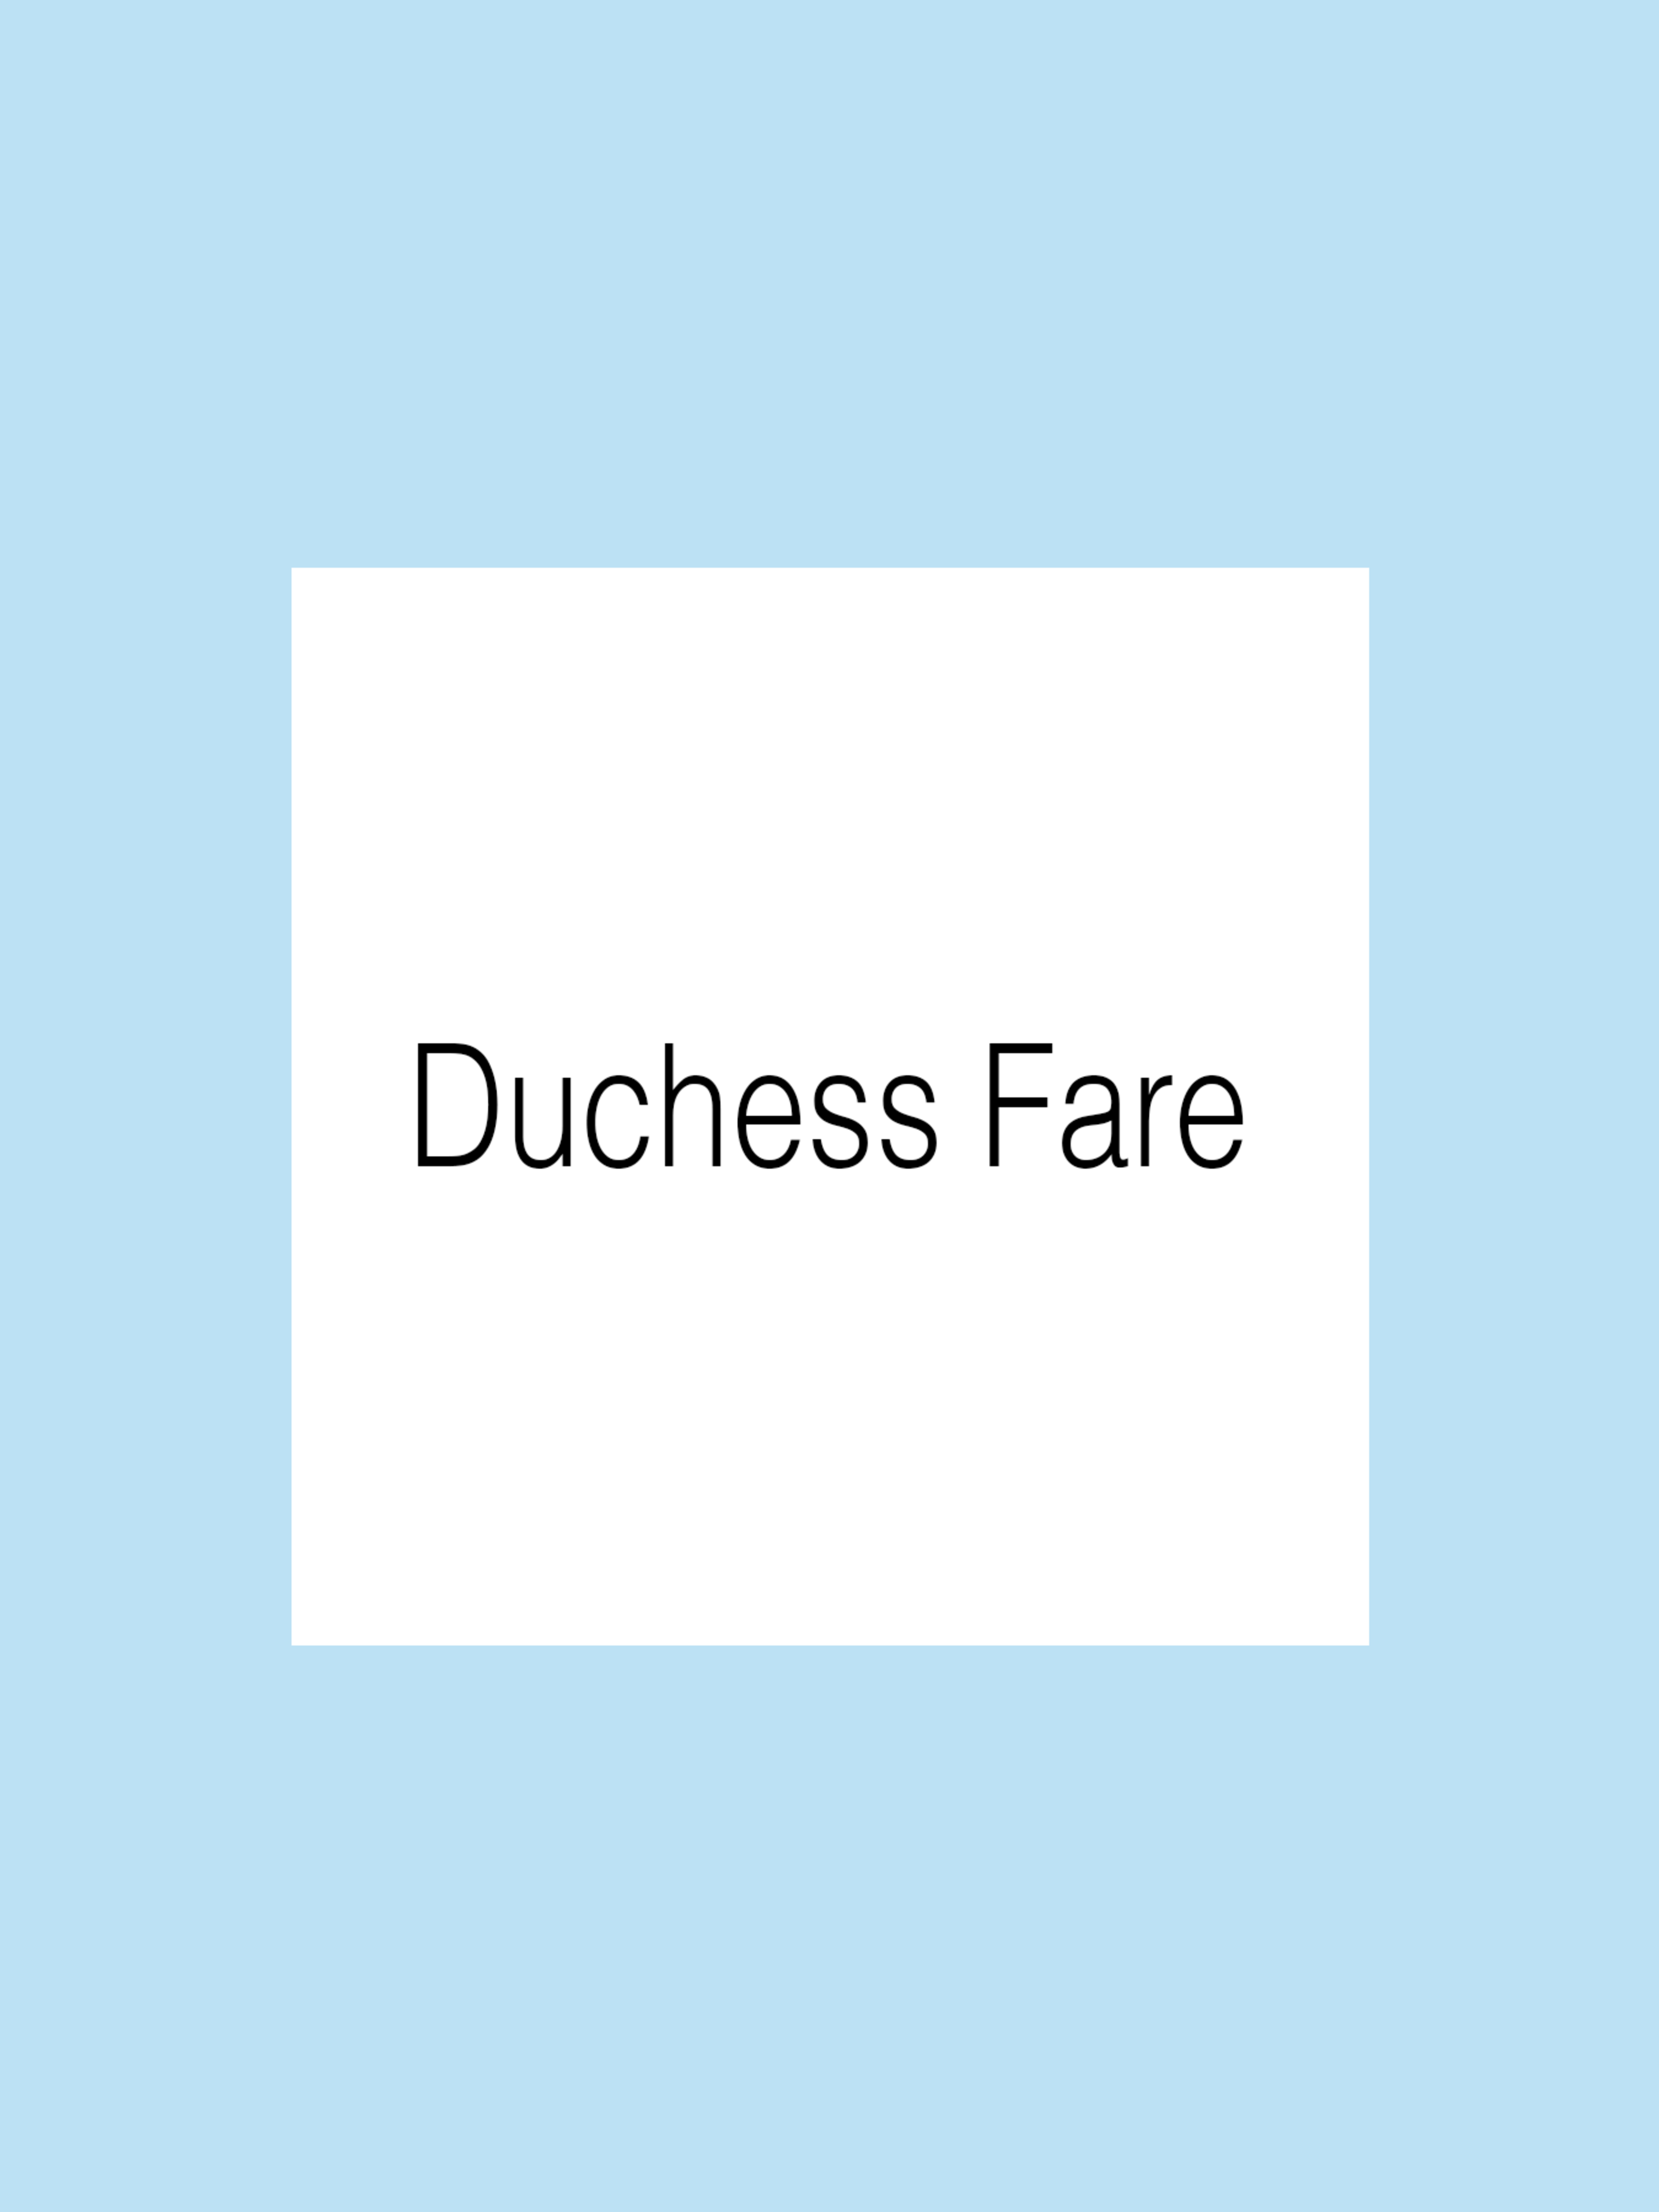 duchess-fare.jpg